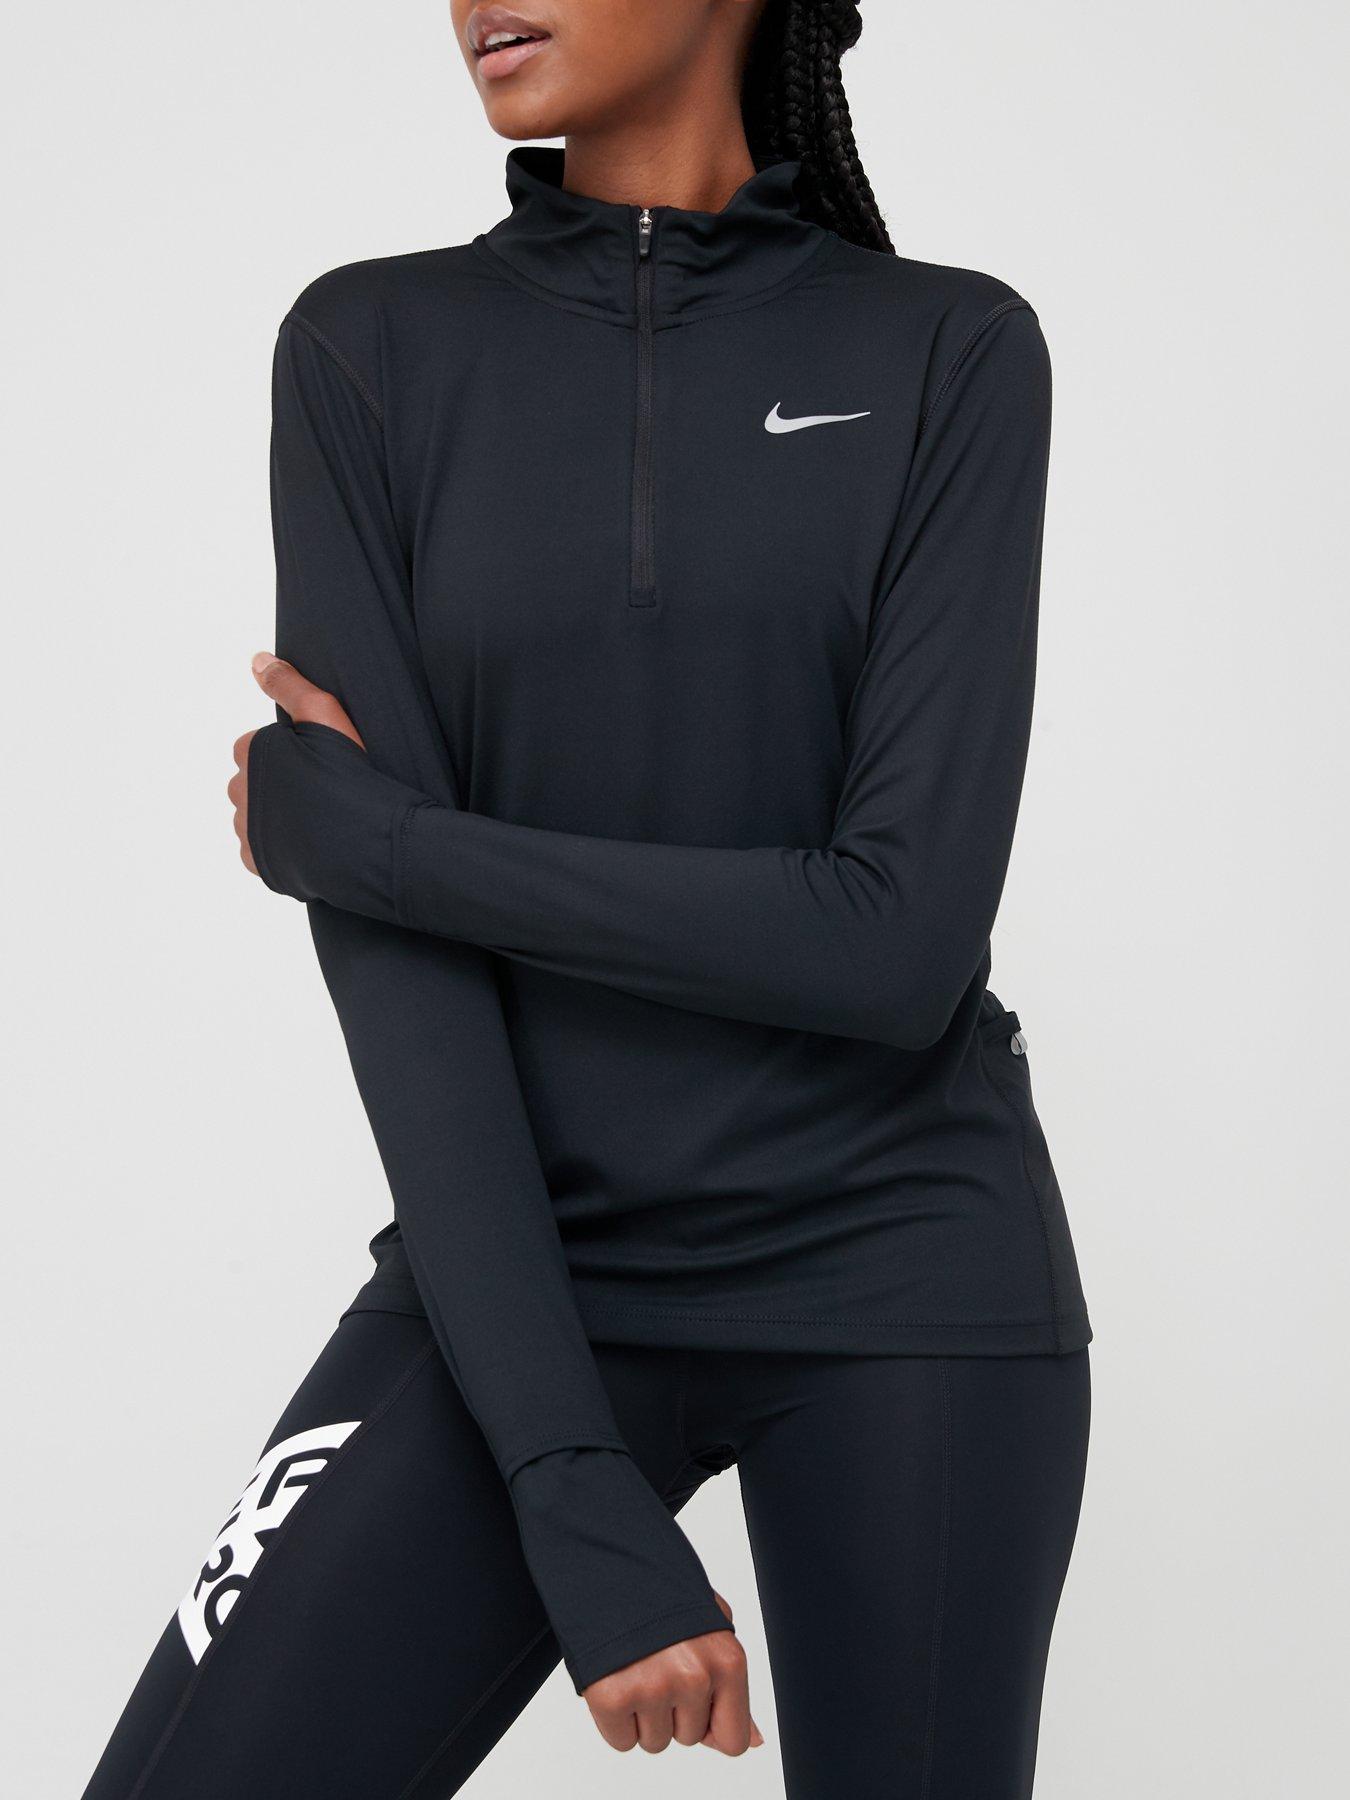 Nike Running Long Sleeve 1/2 Zip Element Top - Black | very.co.uk